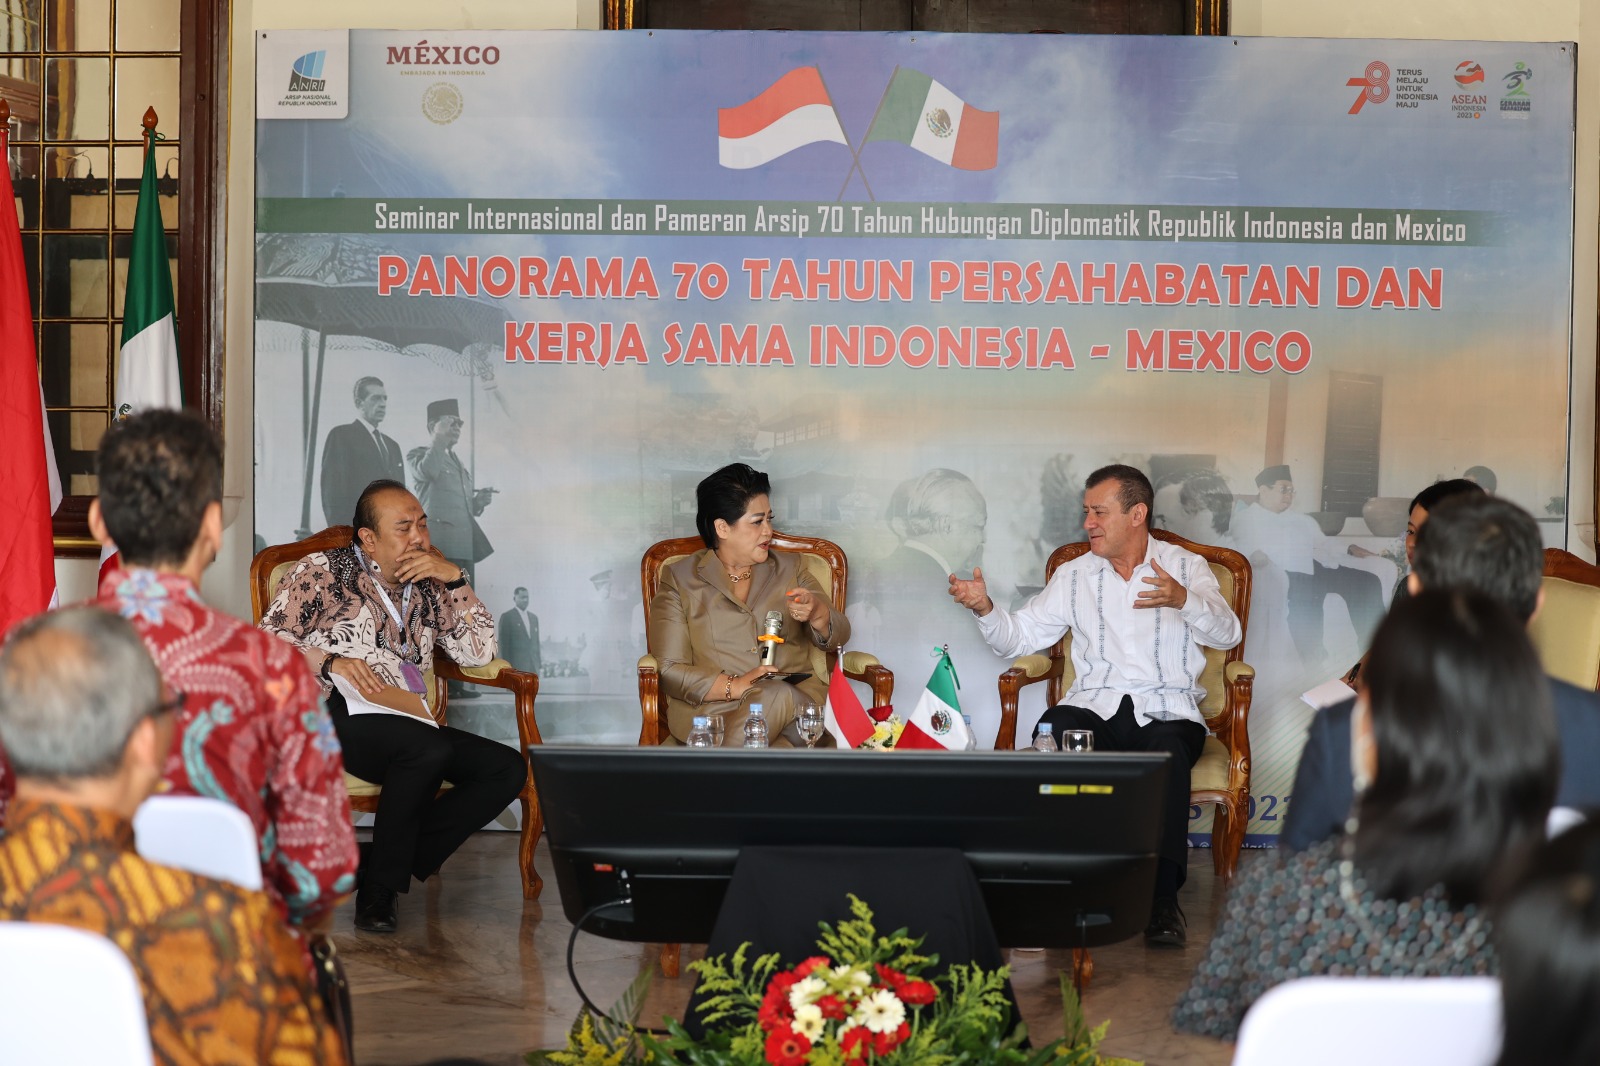 Seminar Internasional Panorama 70 Tahun Persahabatan dan Kerja Sama Indonesia - Meksiko